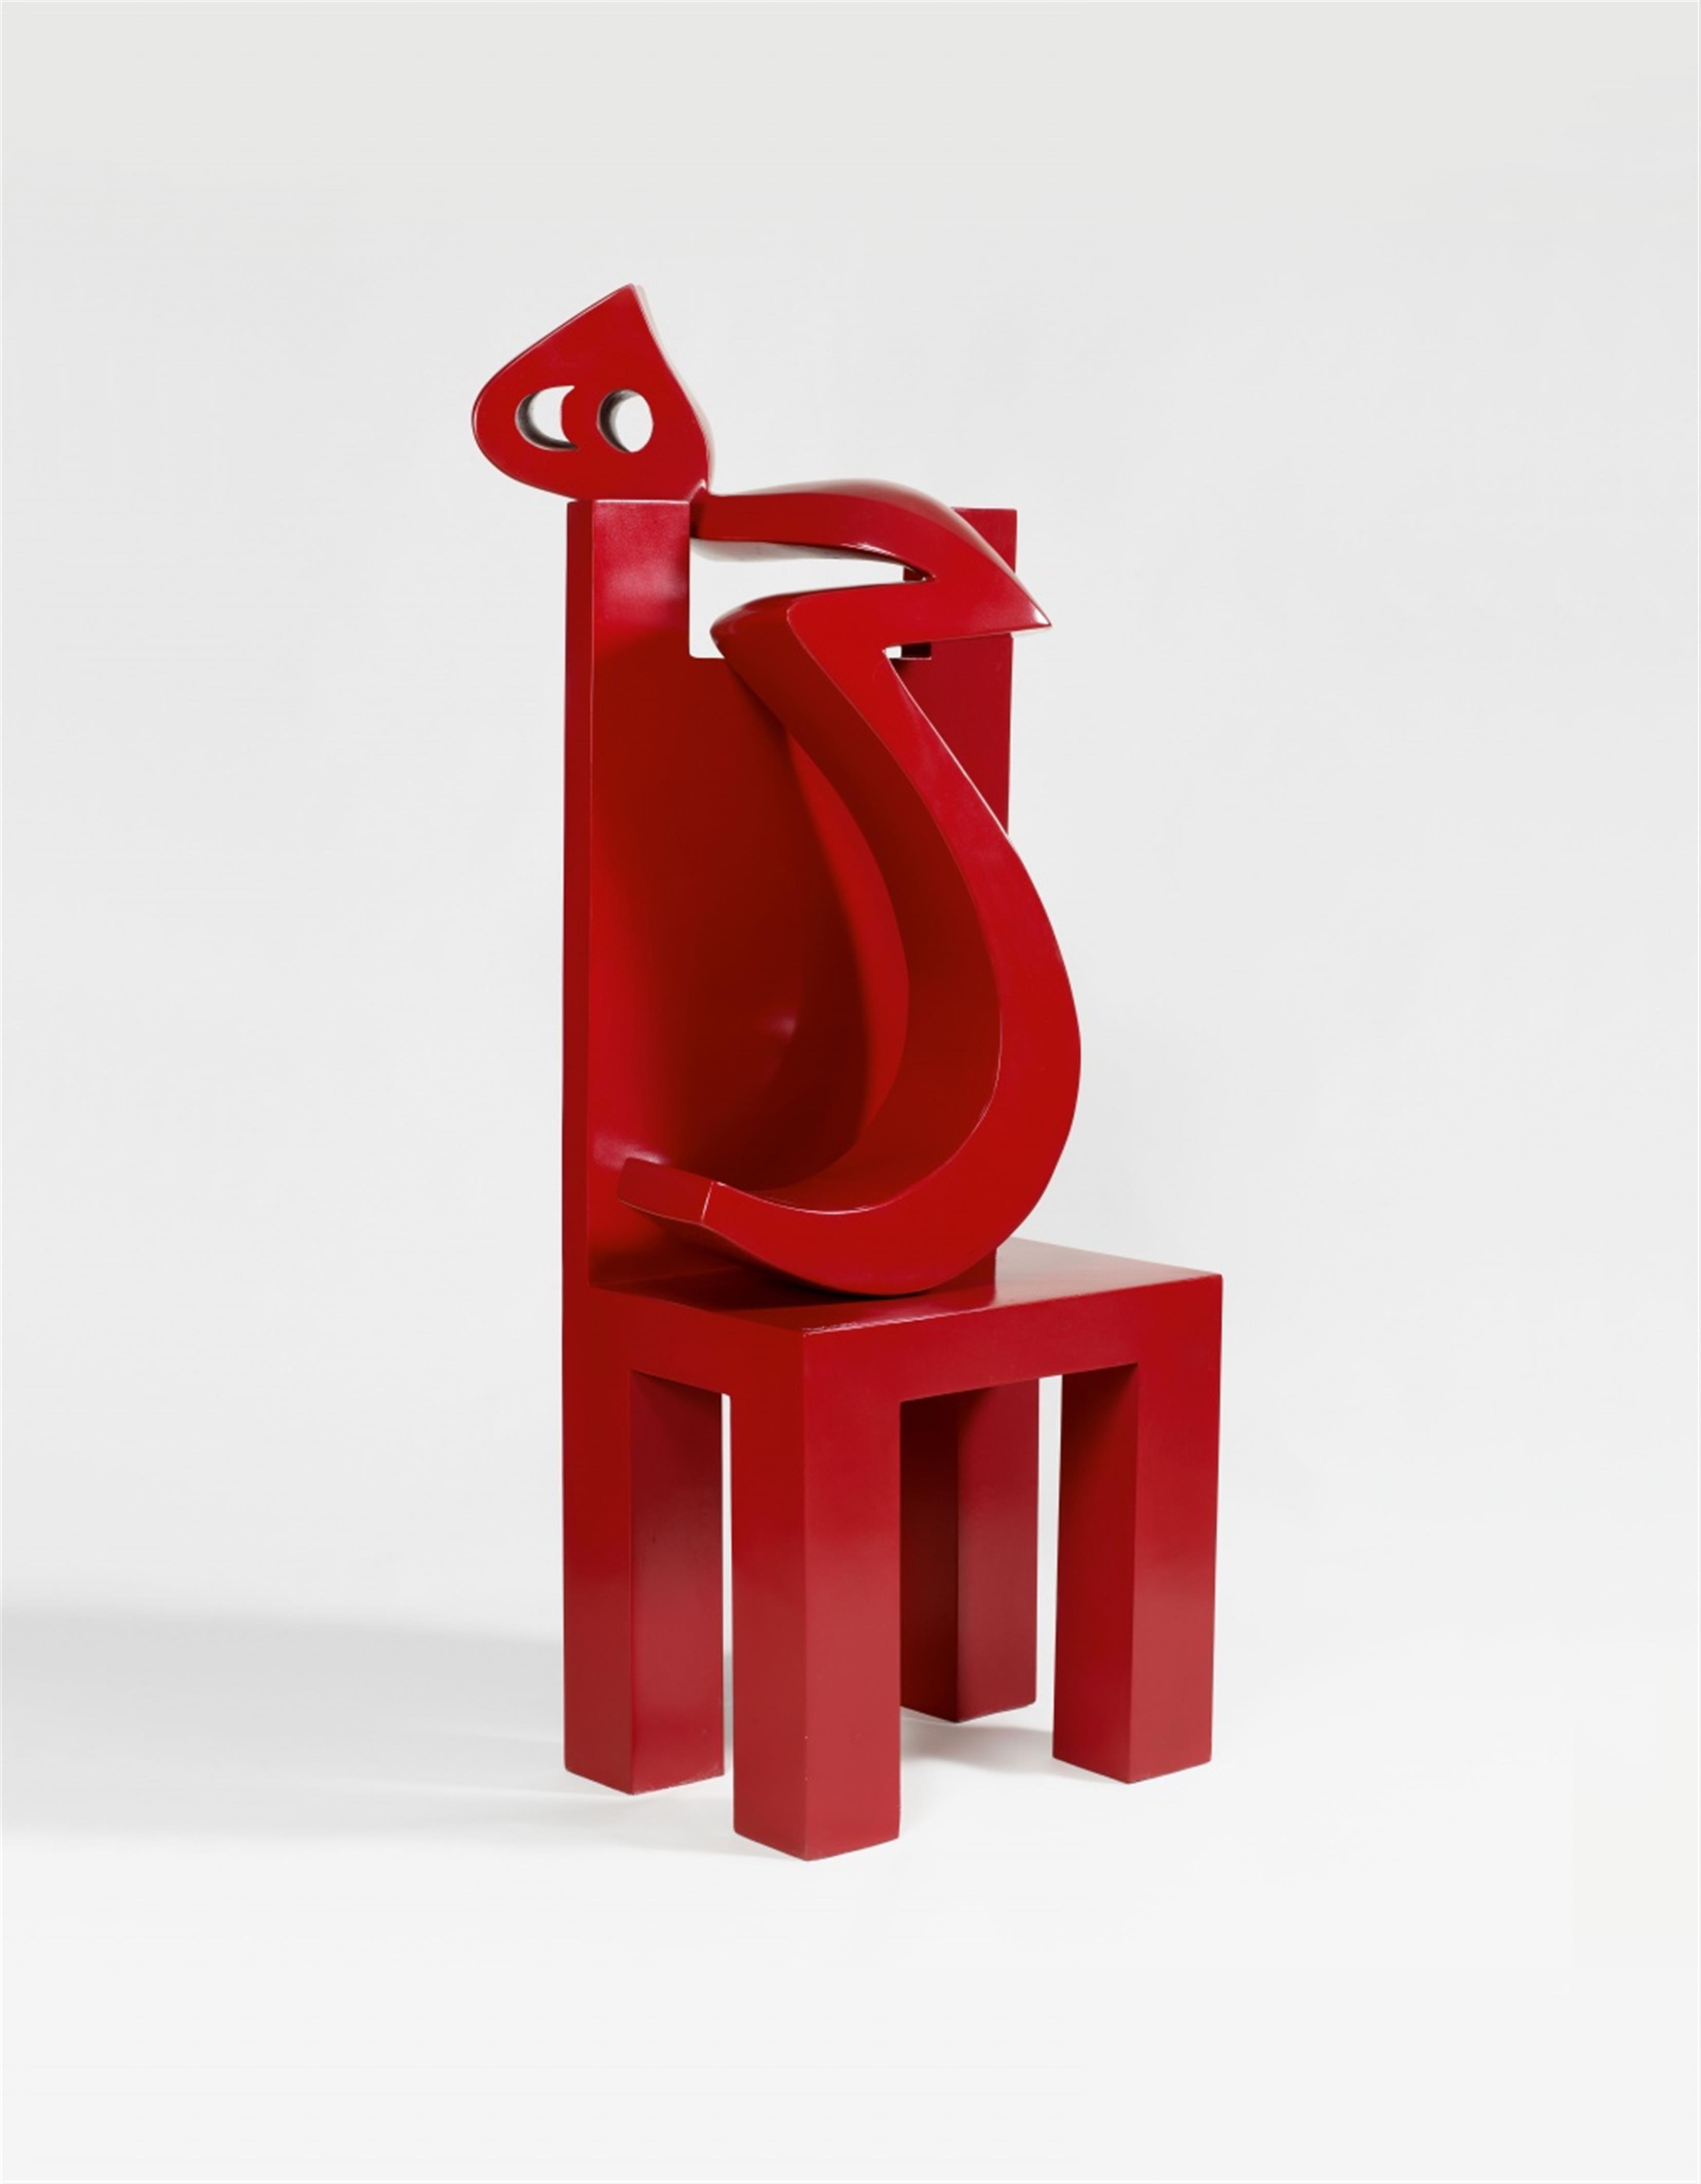 Tanavoli - Heech and Chair - image-1